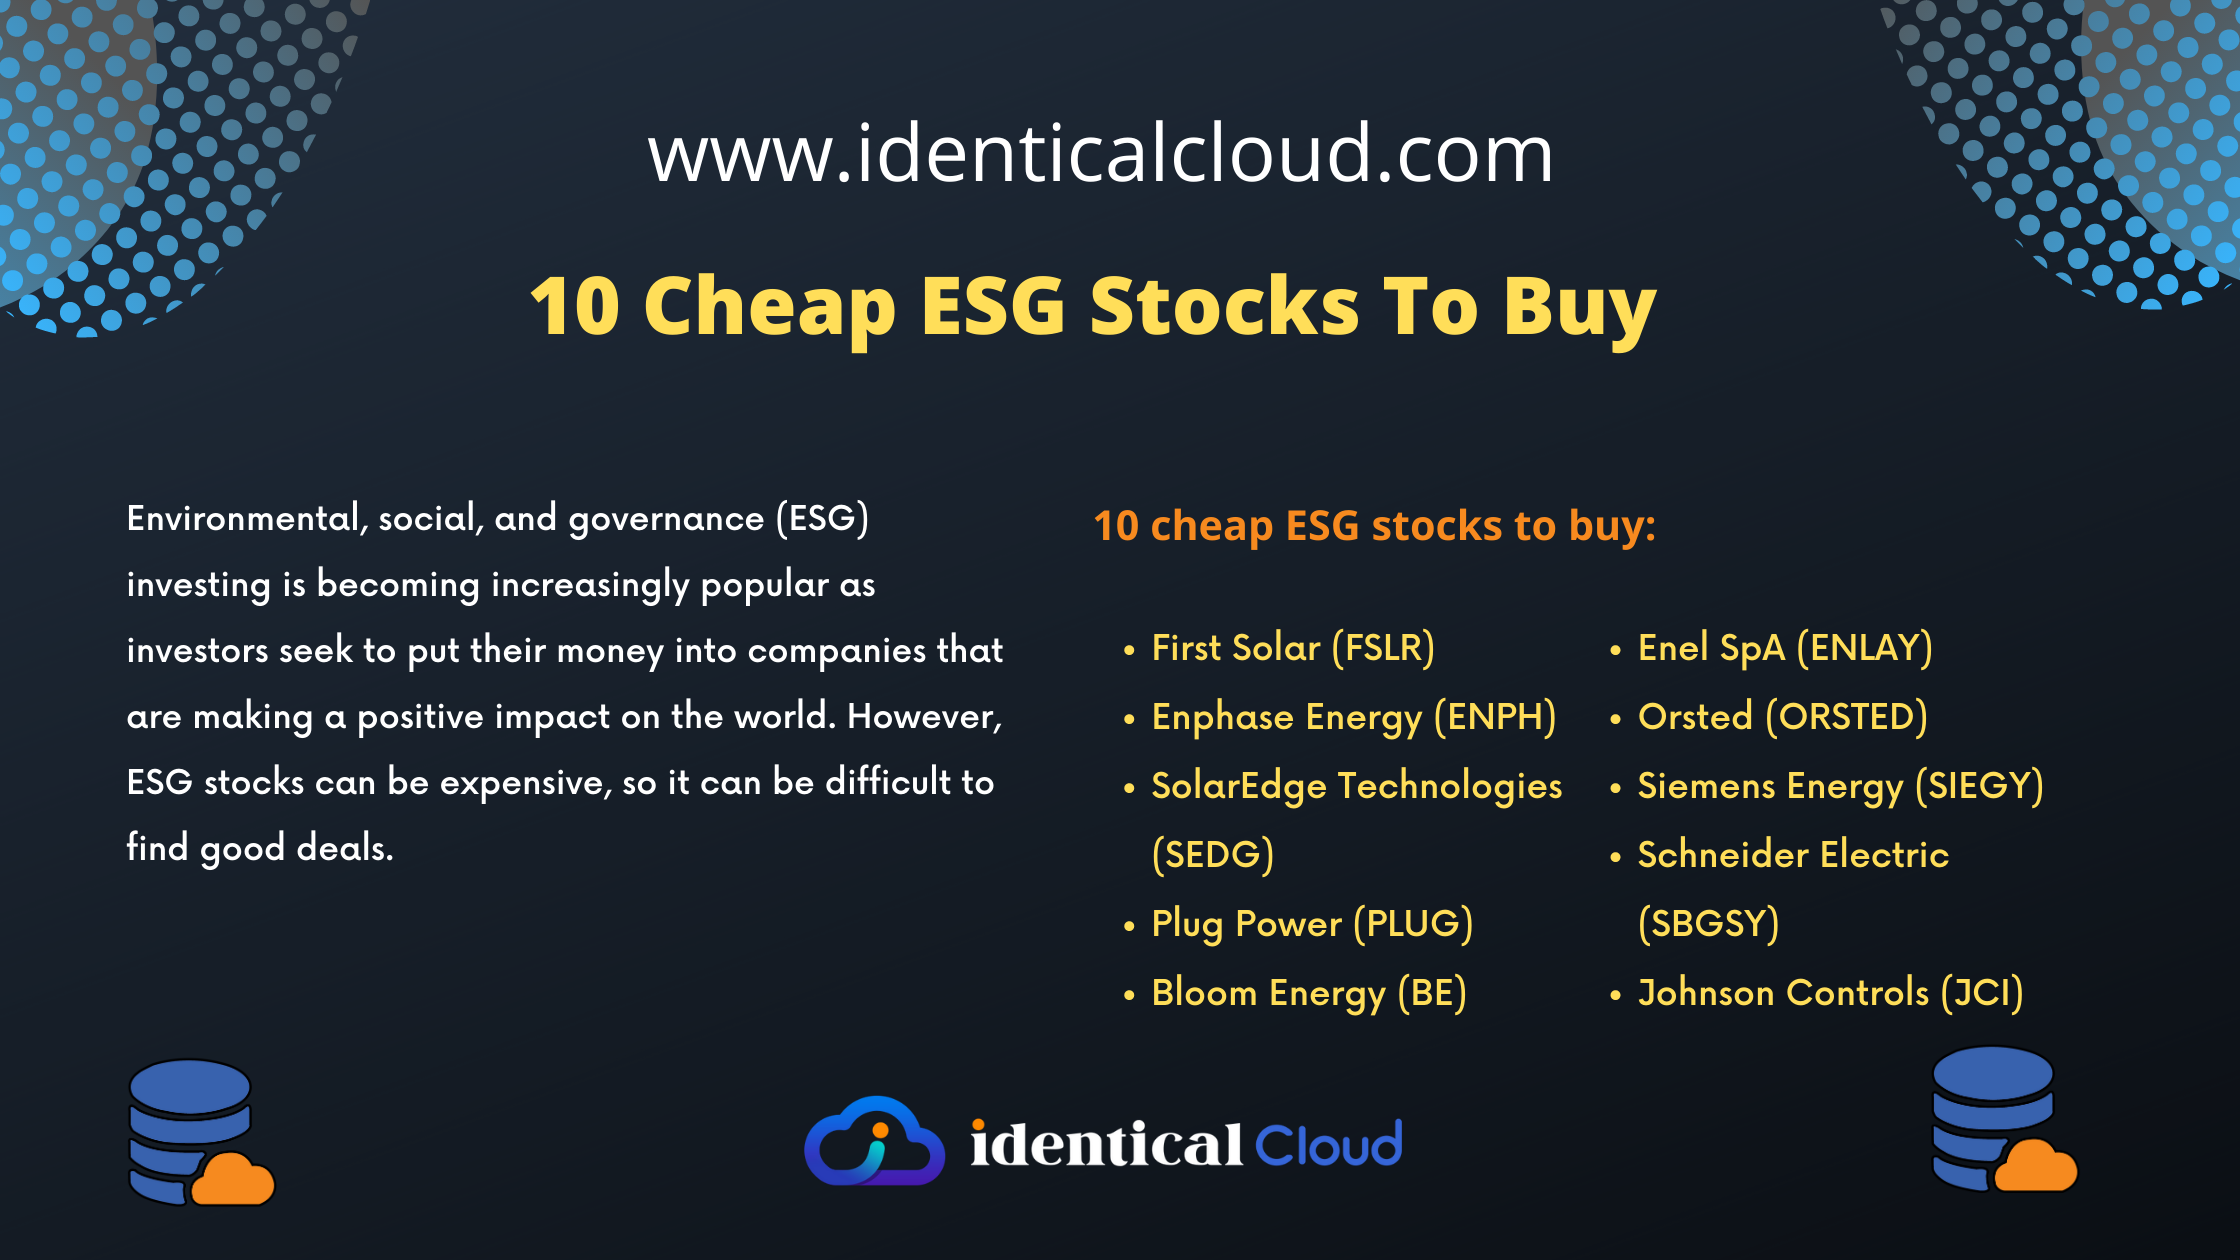 10 Cheap ESG Stocks To Buy - identicalcloud.com